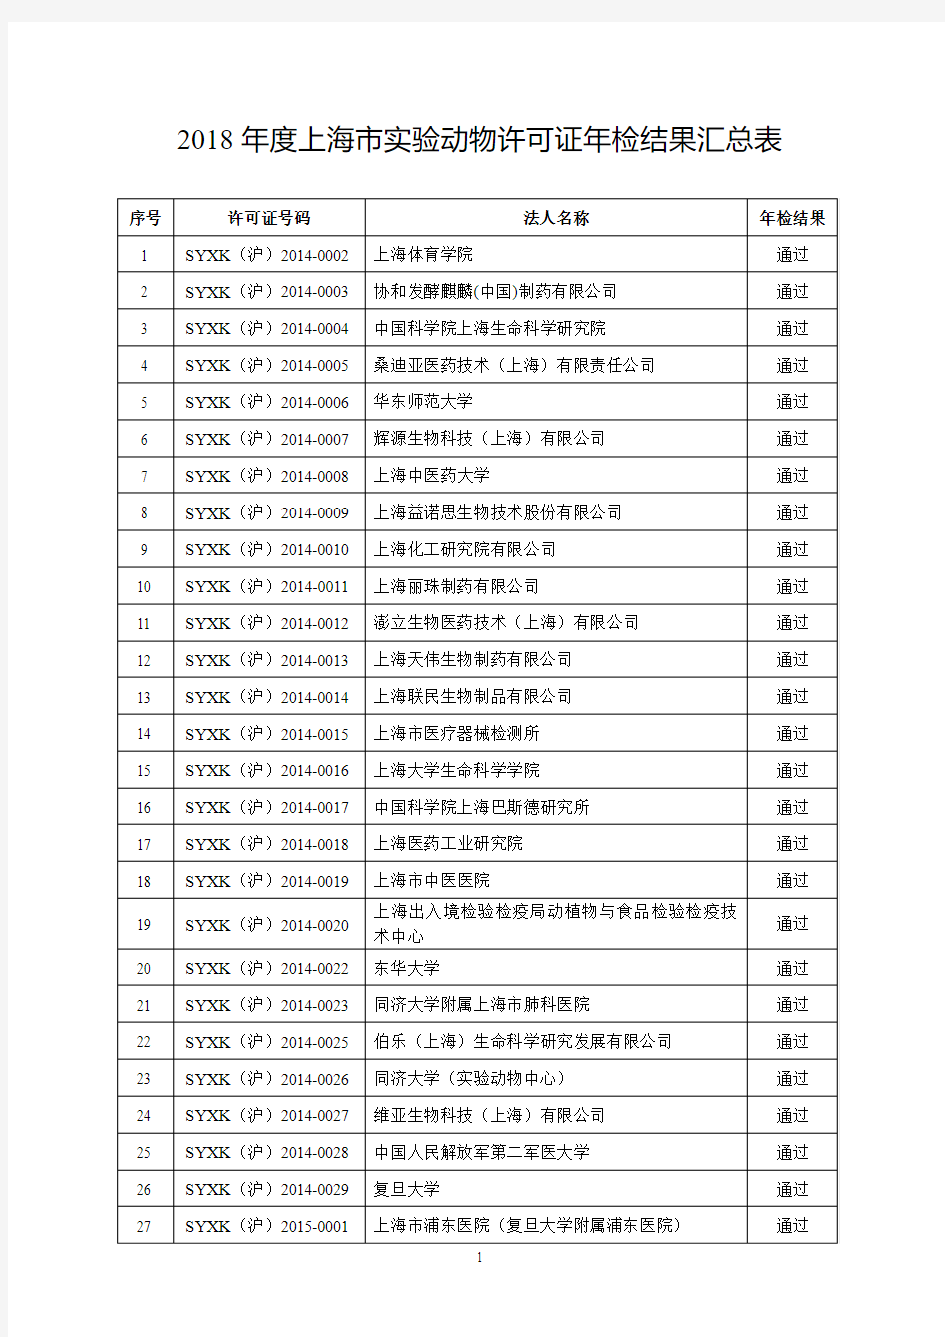 2018 年度上海市实验动物许可证年检结果汇总表